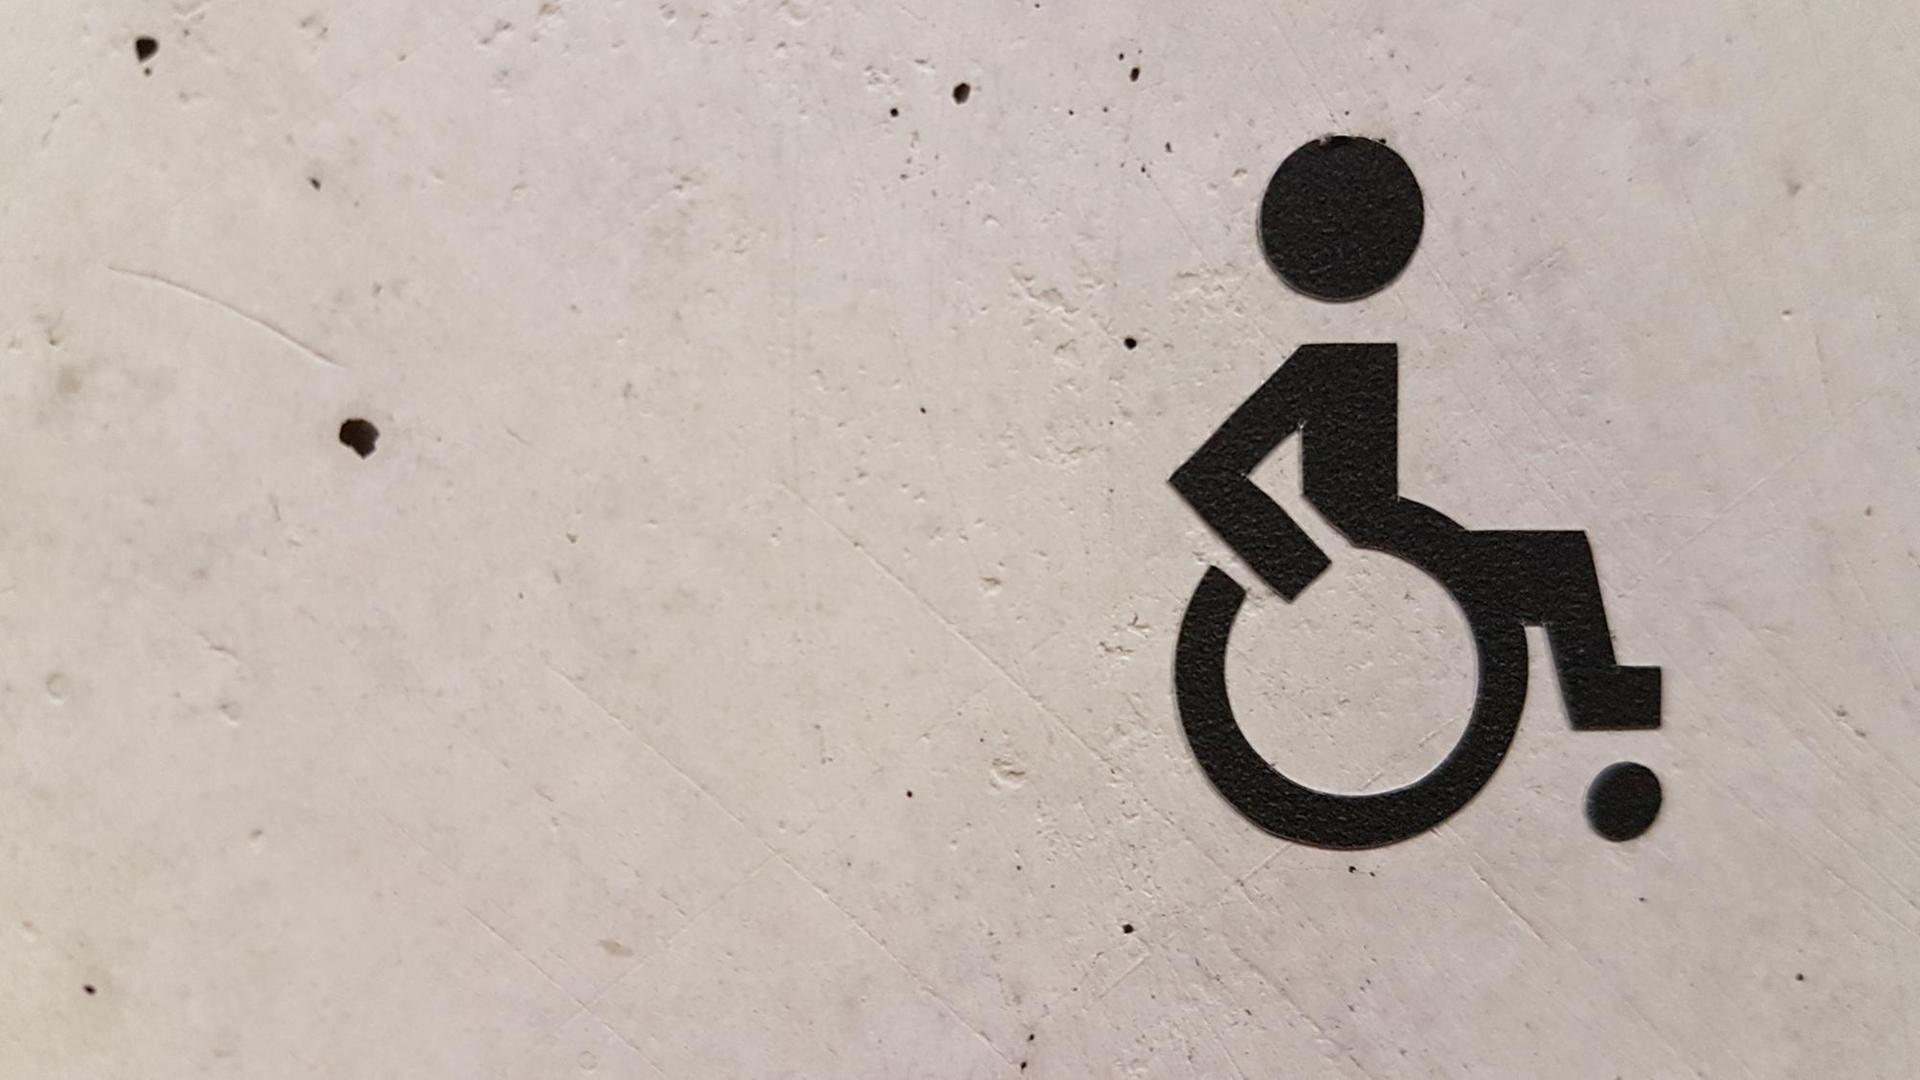 Das Logo "Rollstuhlfahrer" ist an einer Wand zu sehen